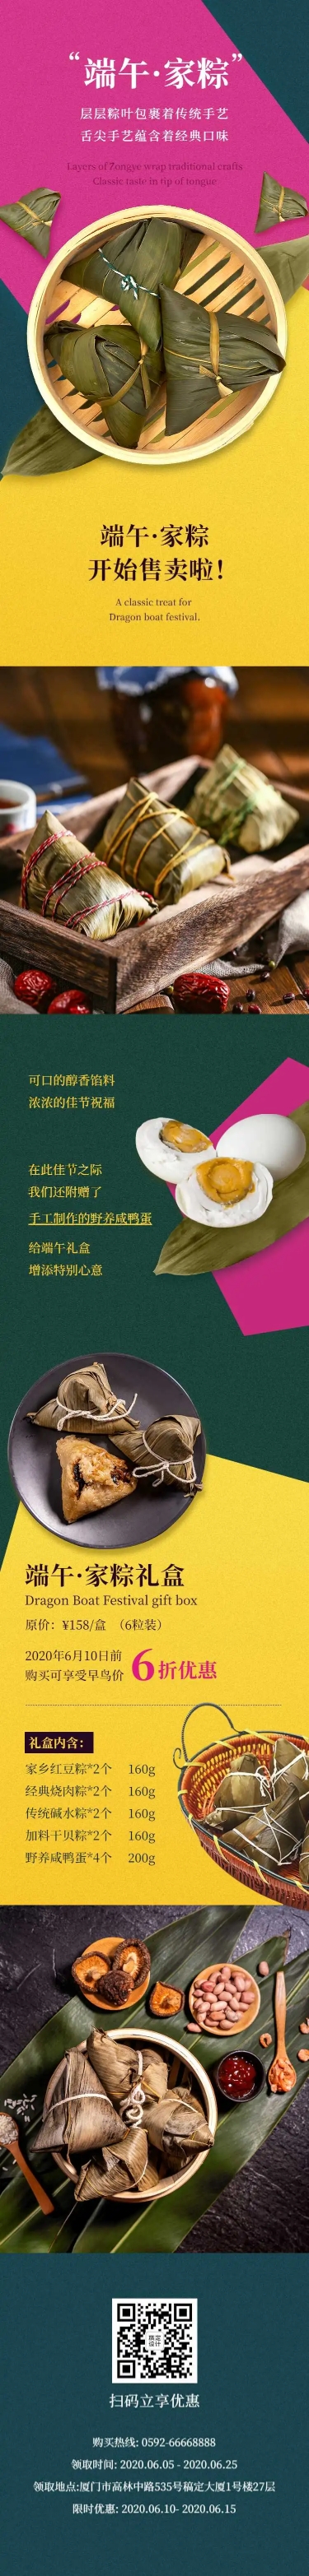 H5长页端午节产品粽子营销推广